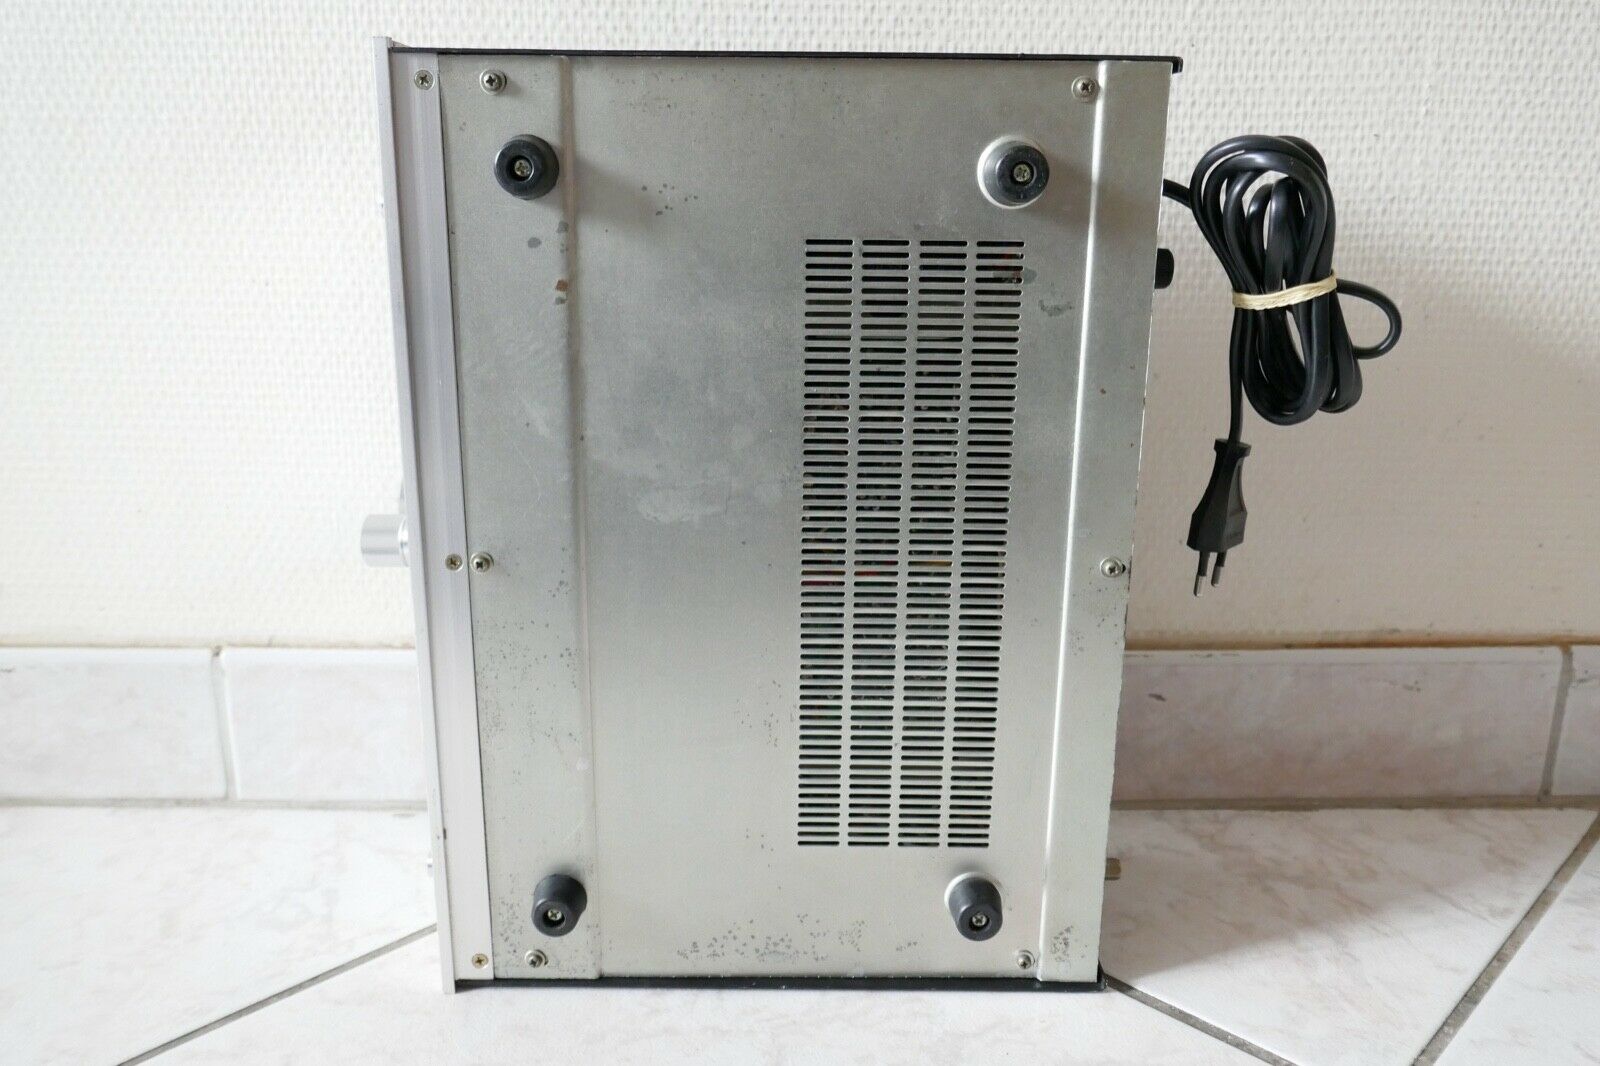 amplificateur amplifier scott A 406 vintage occasion